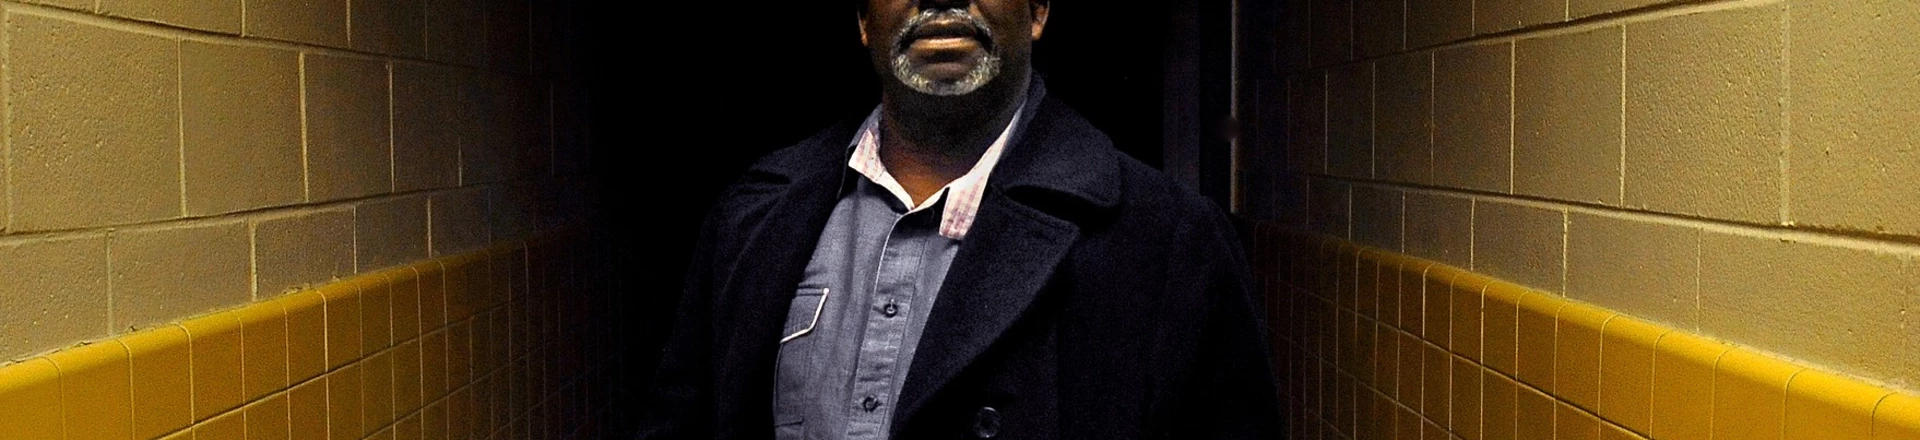 O ex-carrasco Jerry Givens em Richmond, Virginia, em 15 de janeiro de 2013.